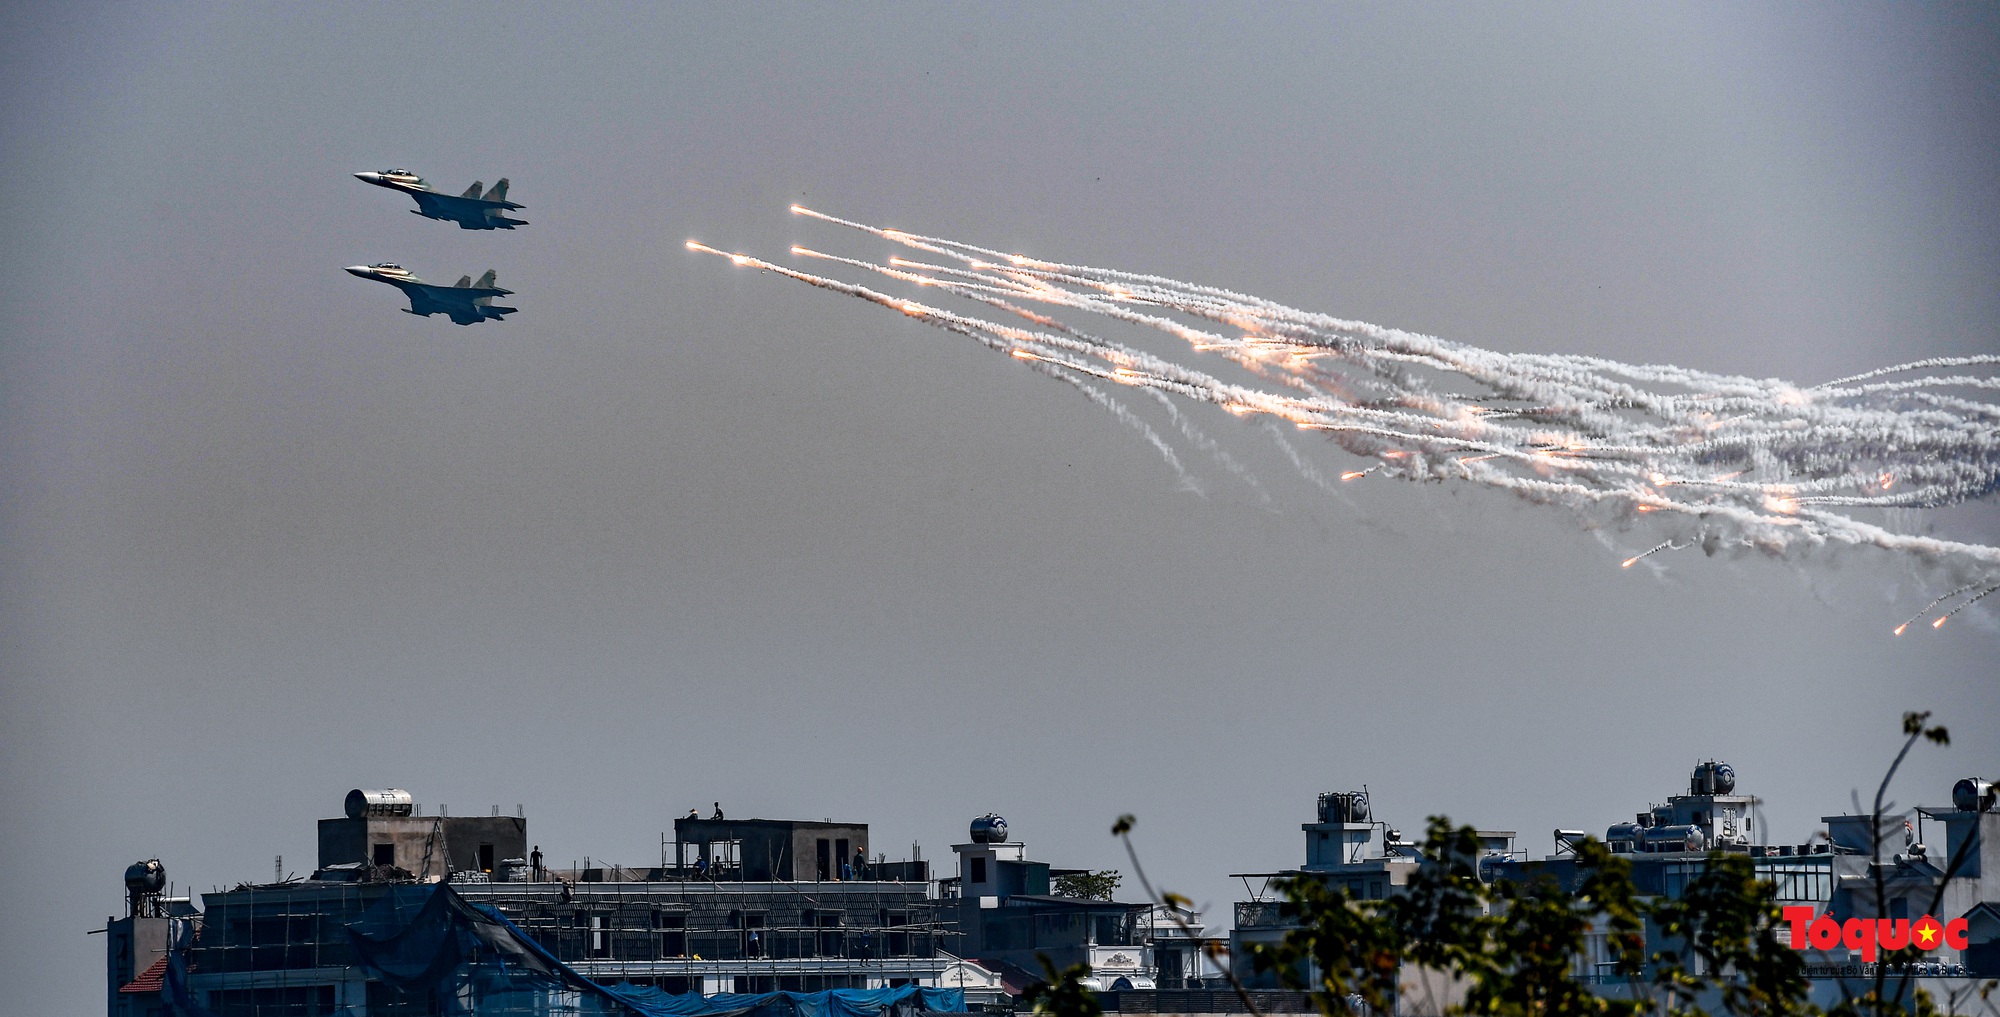 Mãn nhãn với  máy bay chiến đấu Sukhoi và trực thăng Mi thao diễn trên bầu trời Thủ đô Hà Nội - Ảnh 11.